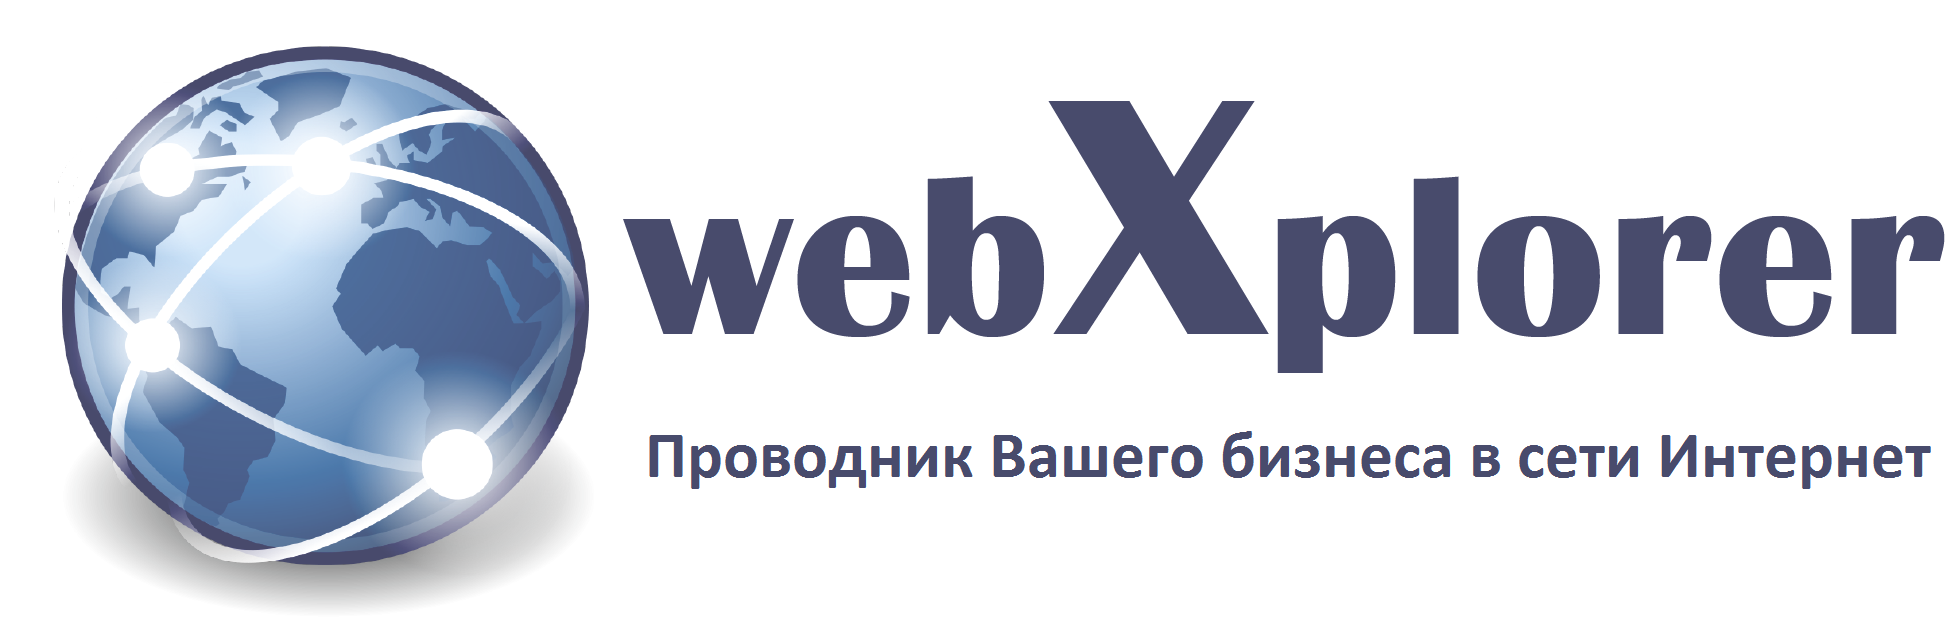 WebXplorer Продвижение Вашего бизнеса в сети Интернет